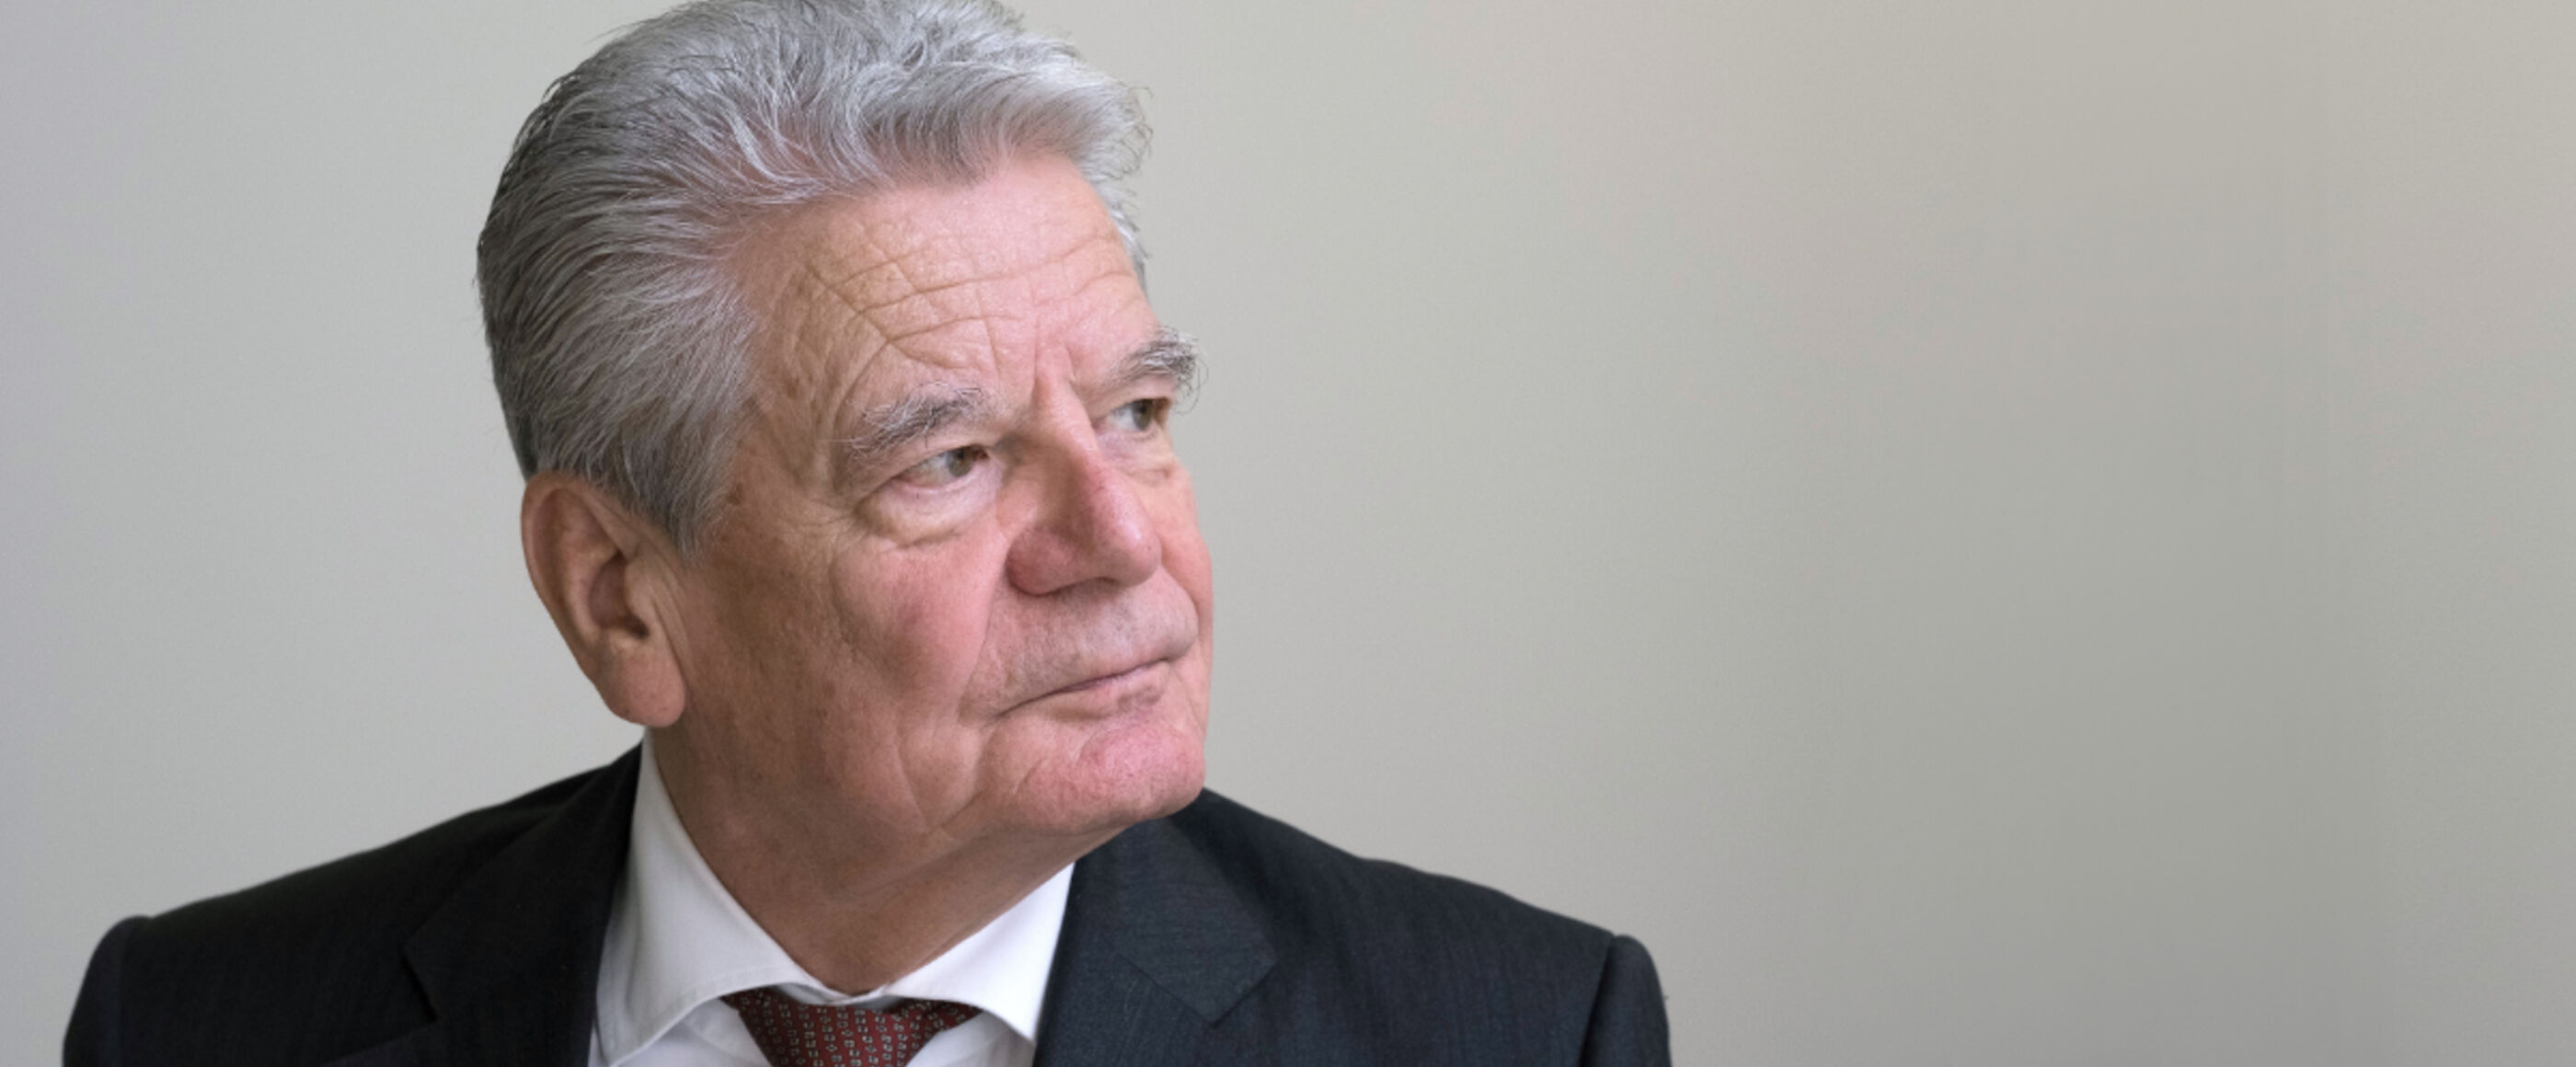 Ein älter Mann in schwarzem Anzug und mit grauen Haaren schaut nach rechts. Das Bild zeigt den früheren Bundespräsidenten Joachim Gauck.